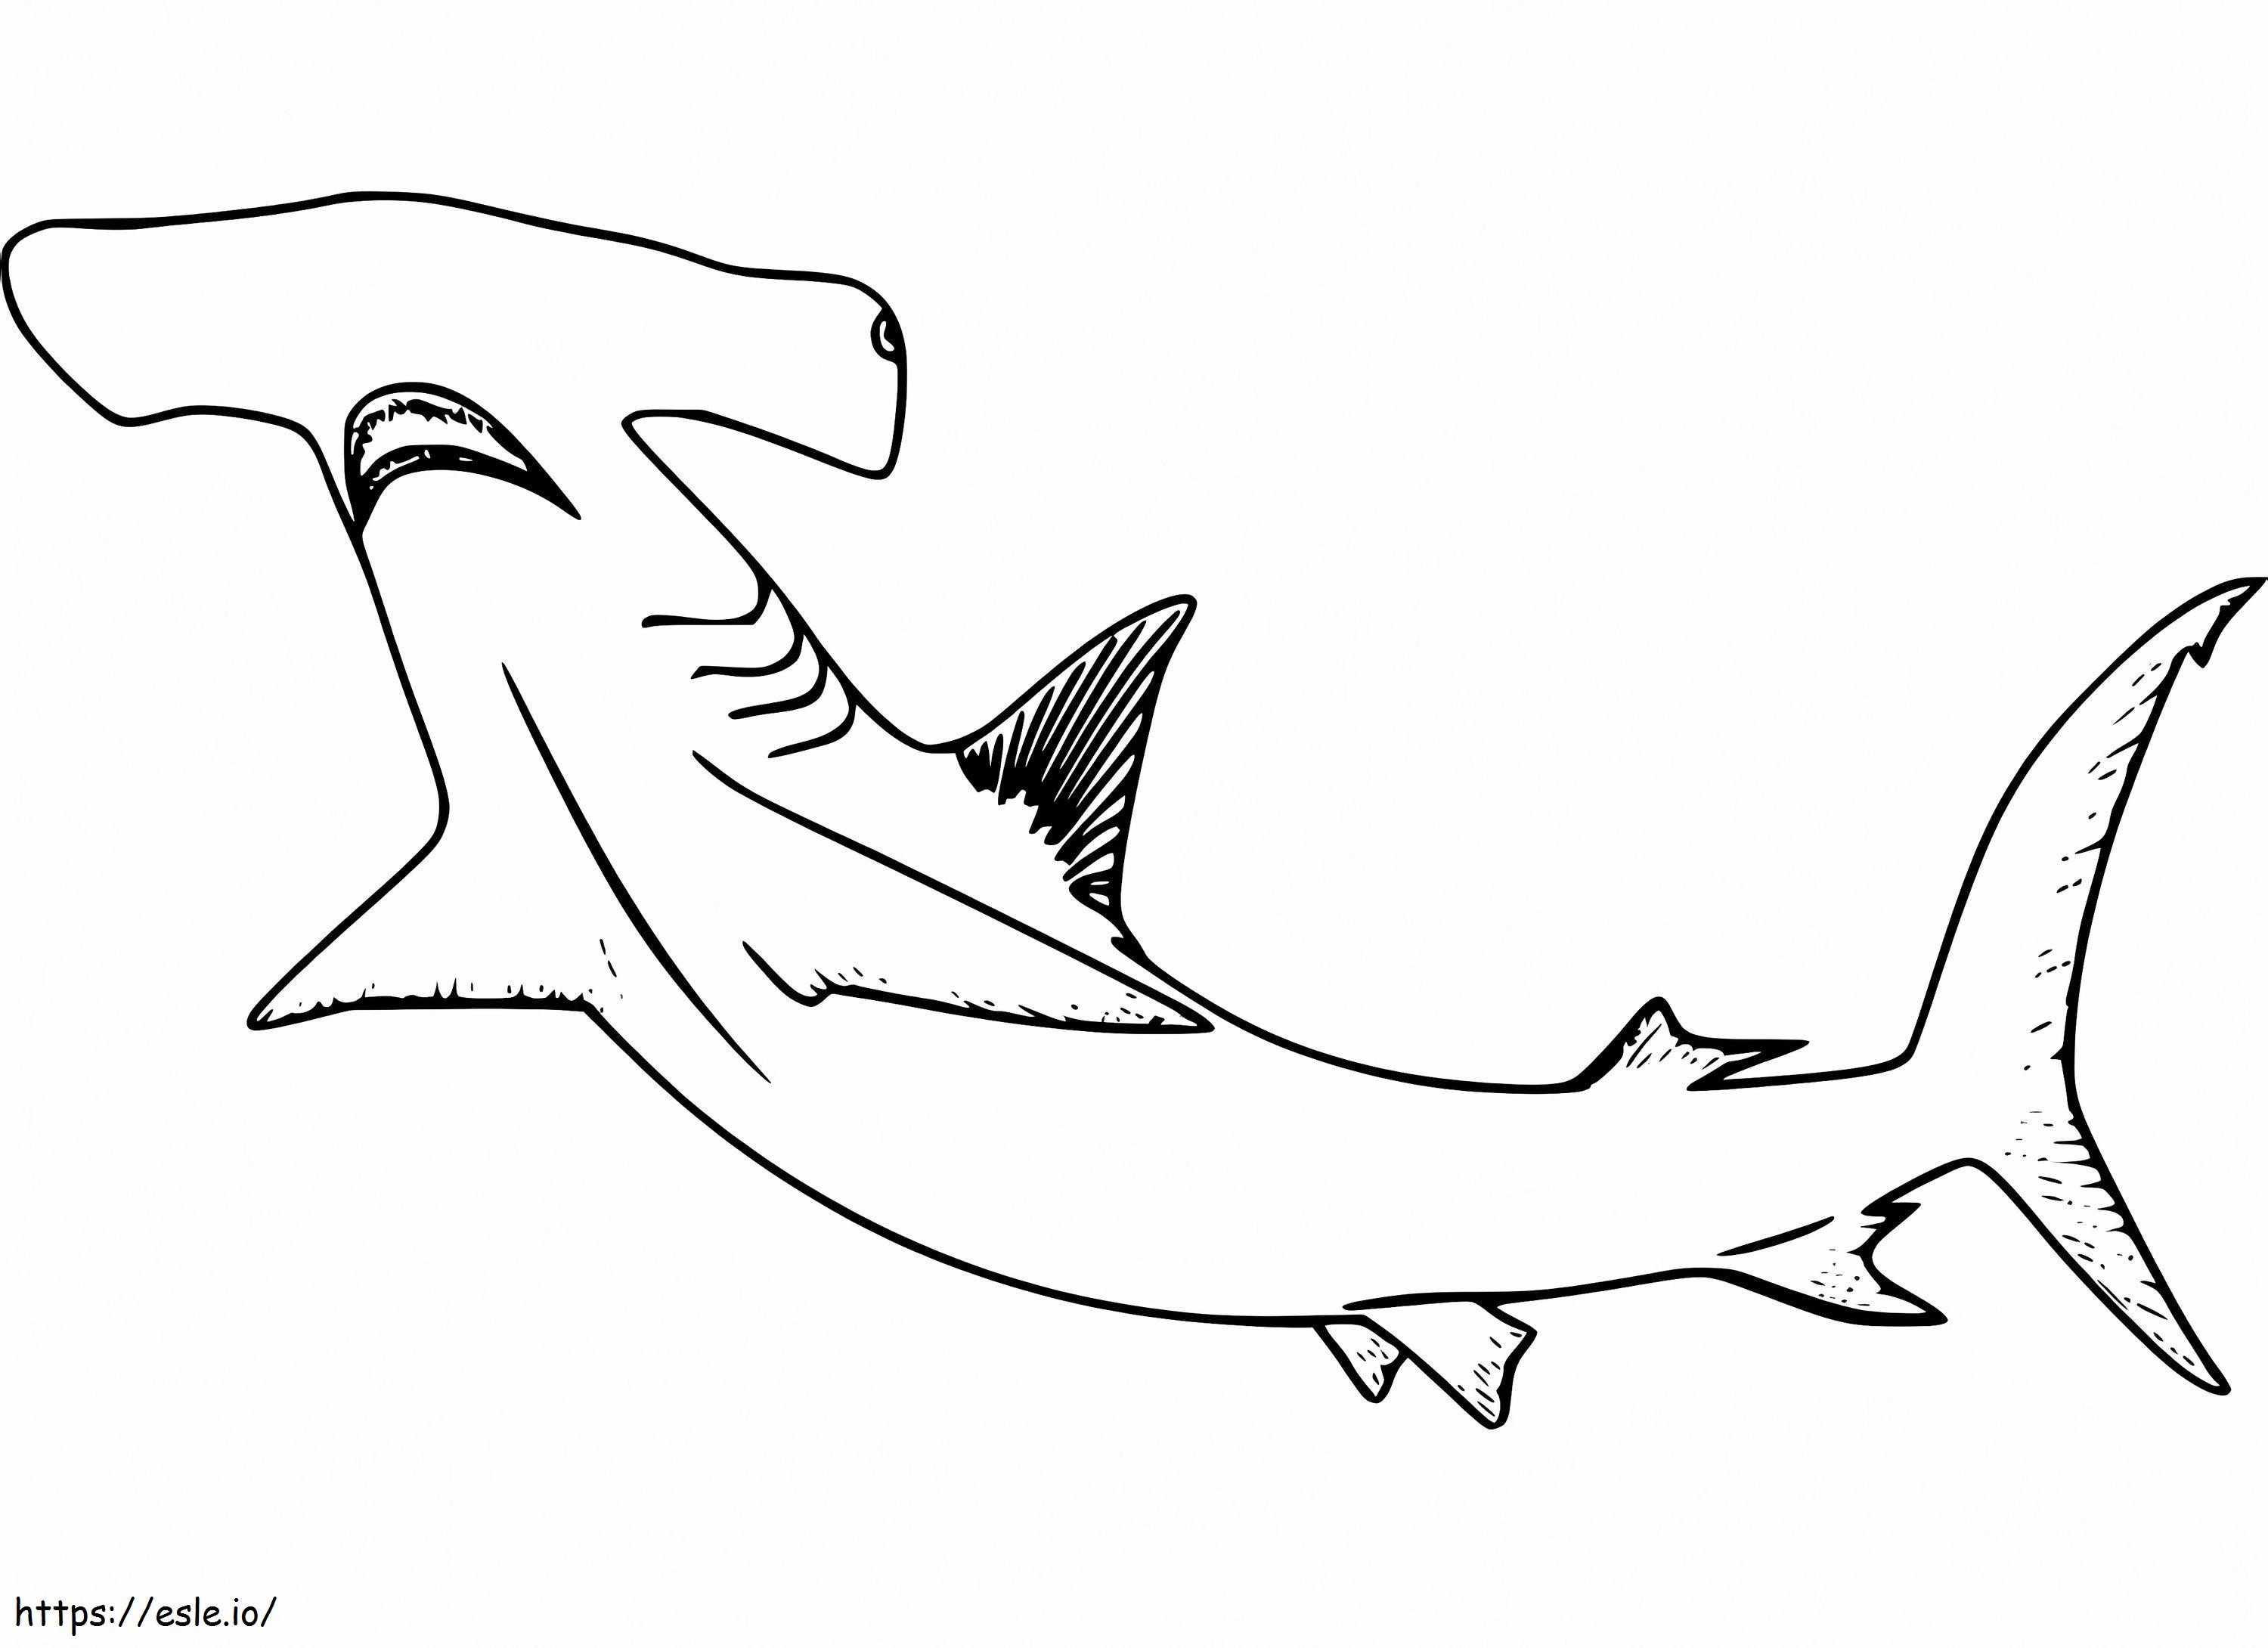 Tiburón martillo 8 para colorear